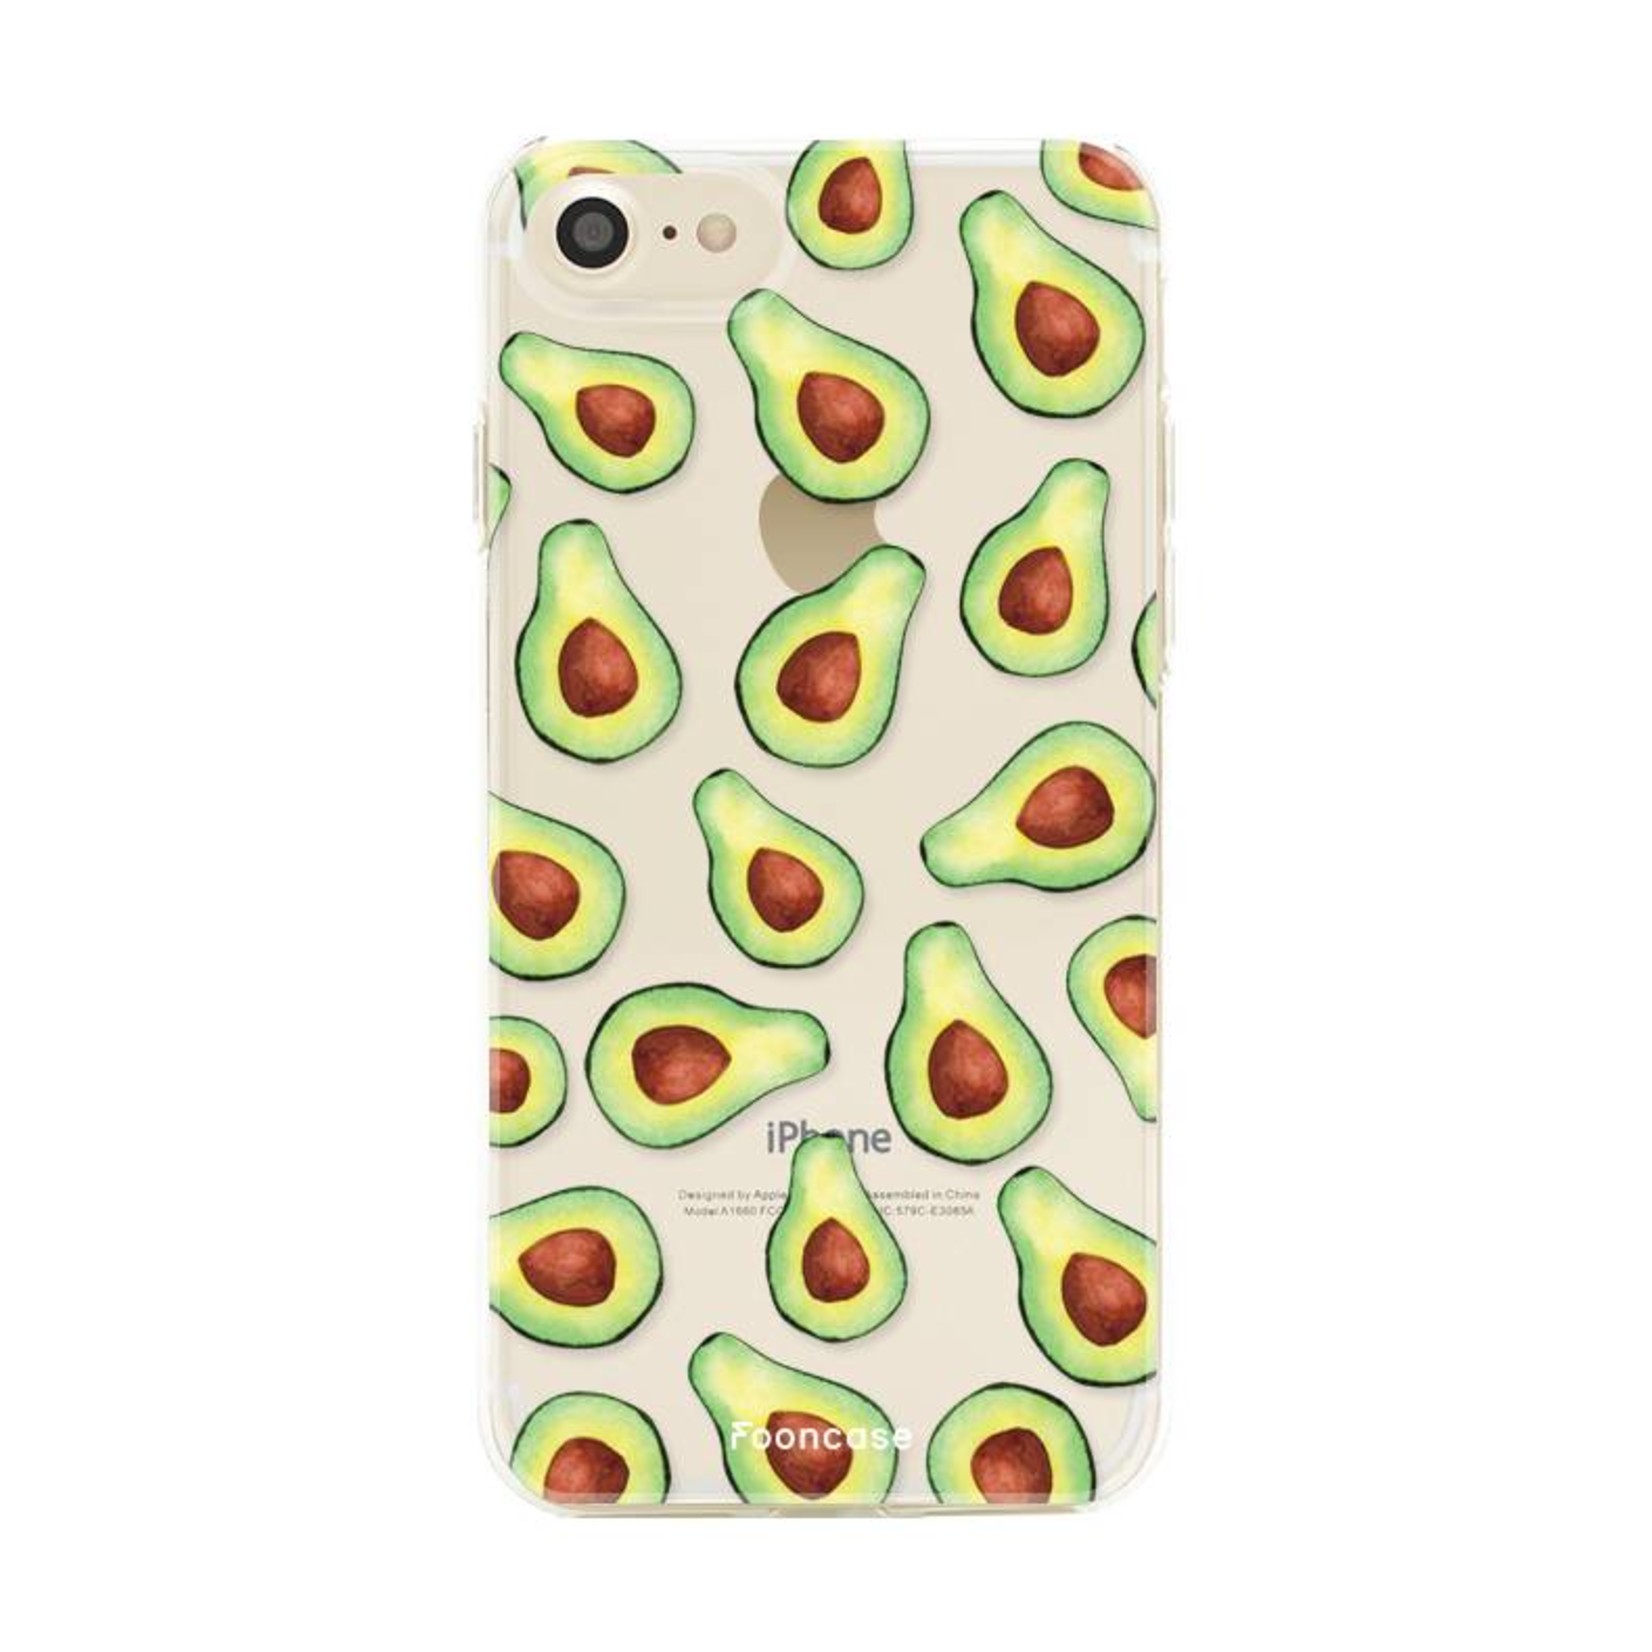 FOONCASE Iphone 7 Case - Avocado